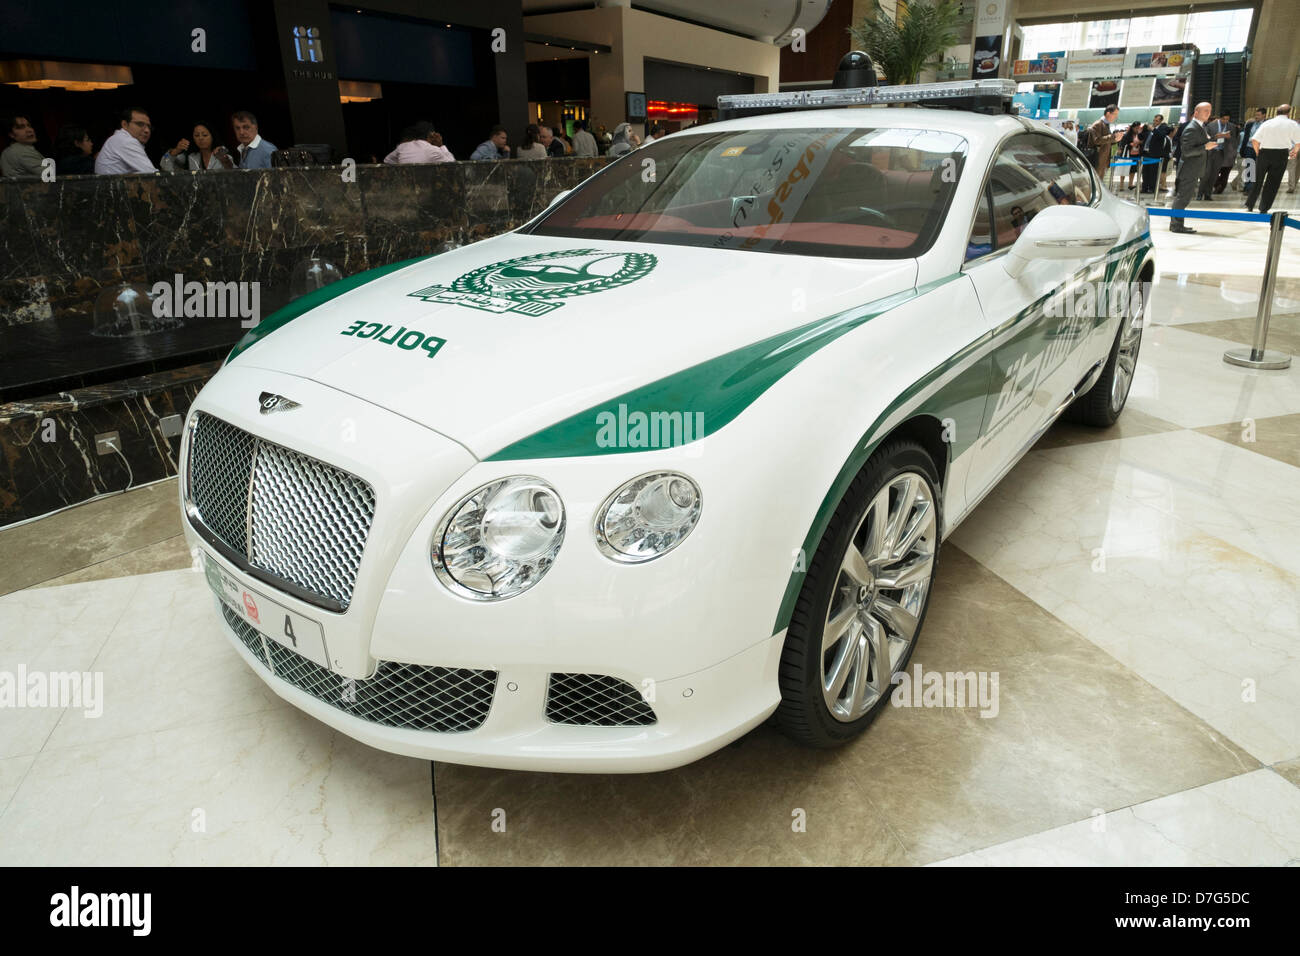 Dubaï, Émirats arabes unis. 7 mai 2013. Bentley Continental GT de haute performance voiture de police de Dubaï à l'affiche au World Trade Center de Dubaï aux Émirats arabes unis. Credit : Iain Masterton / Alamy Live News Banque D'Images